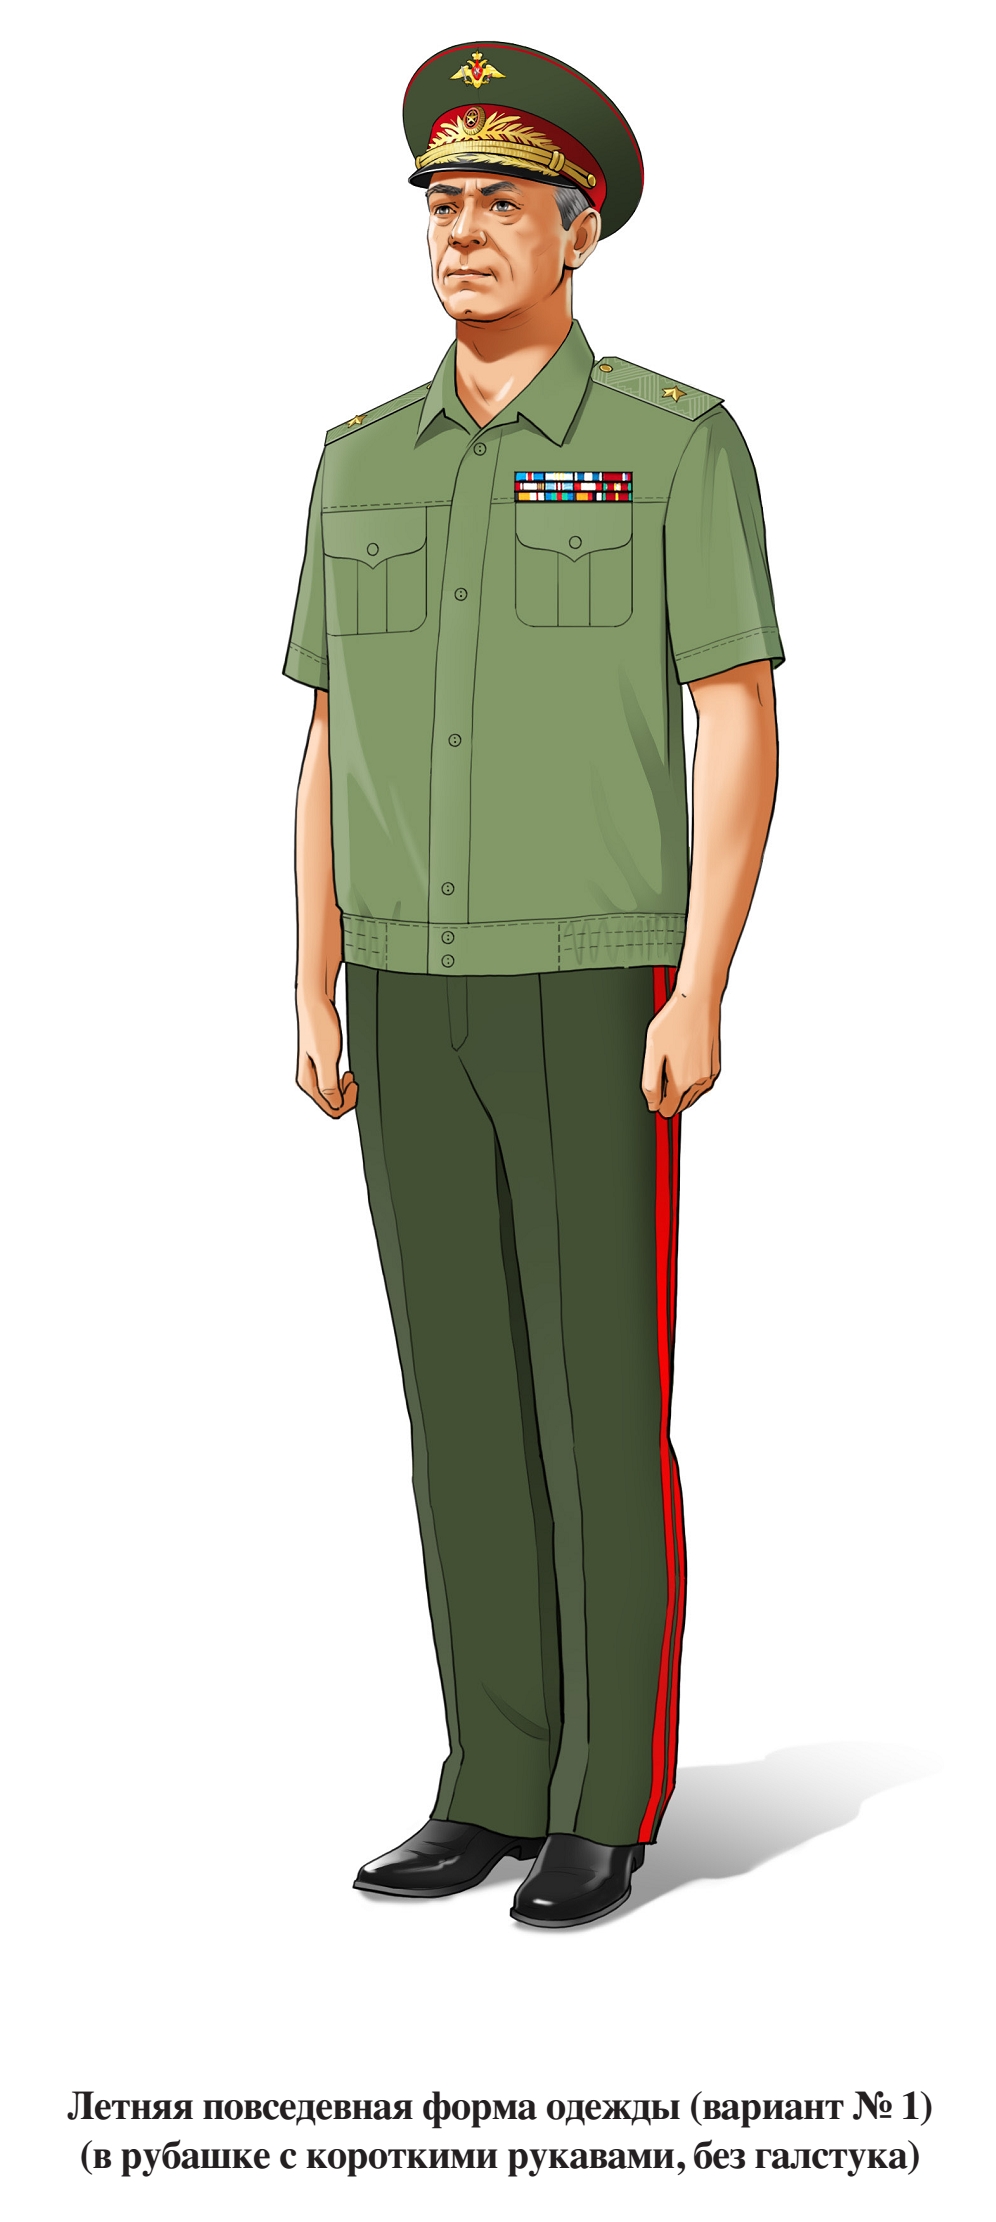 Генерал, летняя повседневная форма, в рубашке с коротким рукавом, без галстука